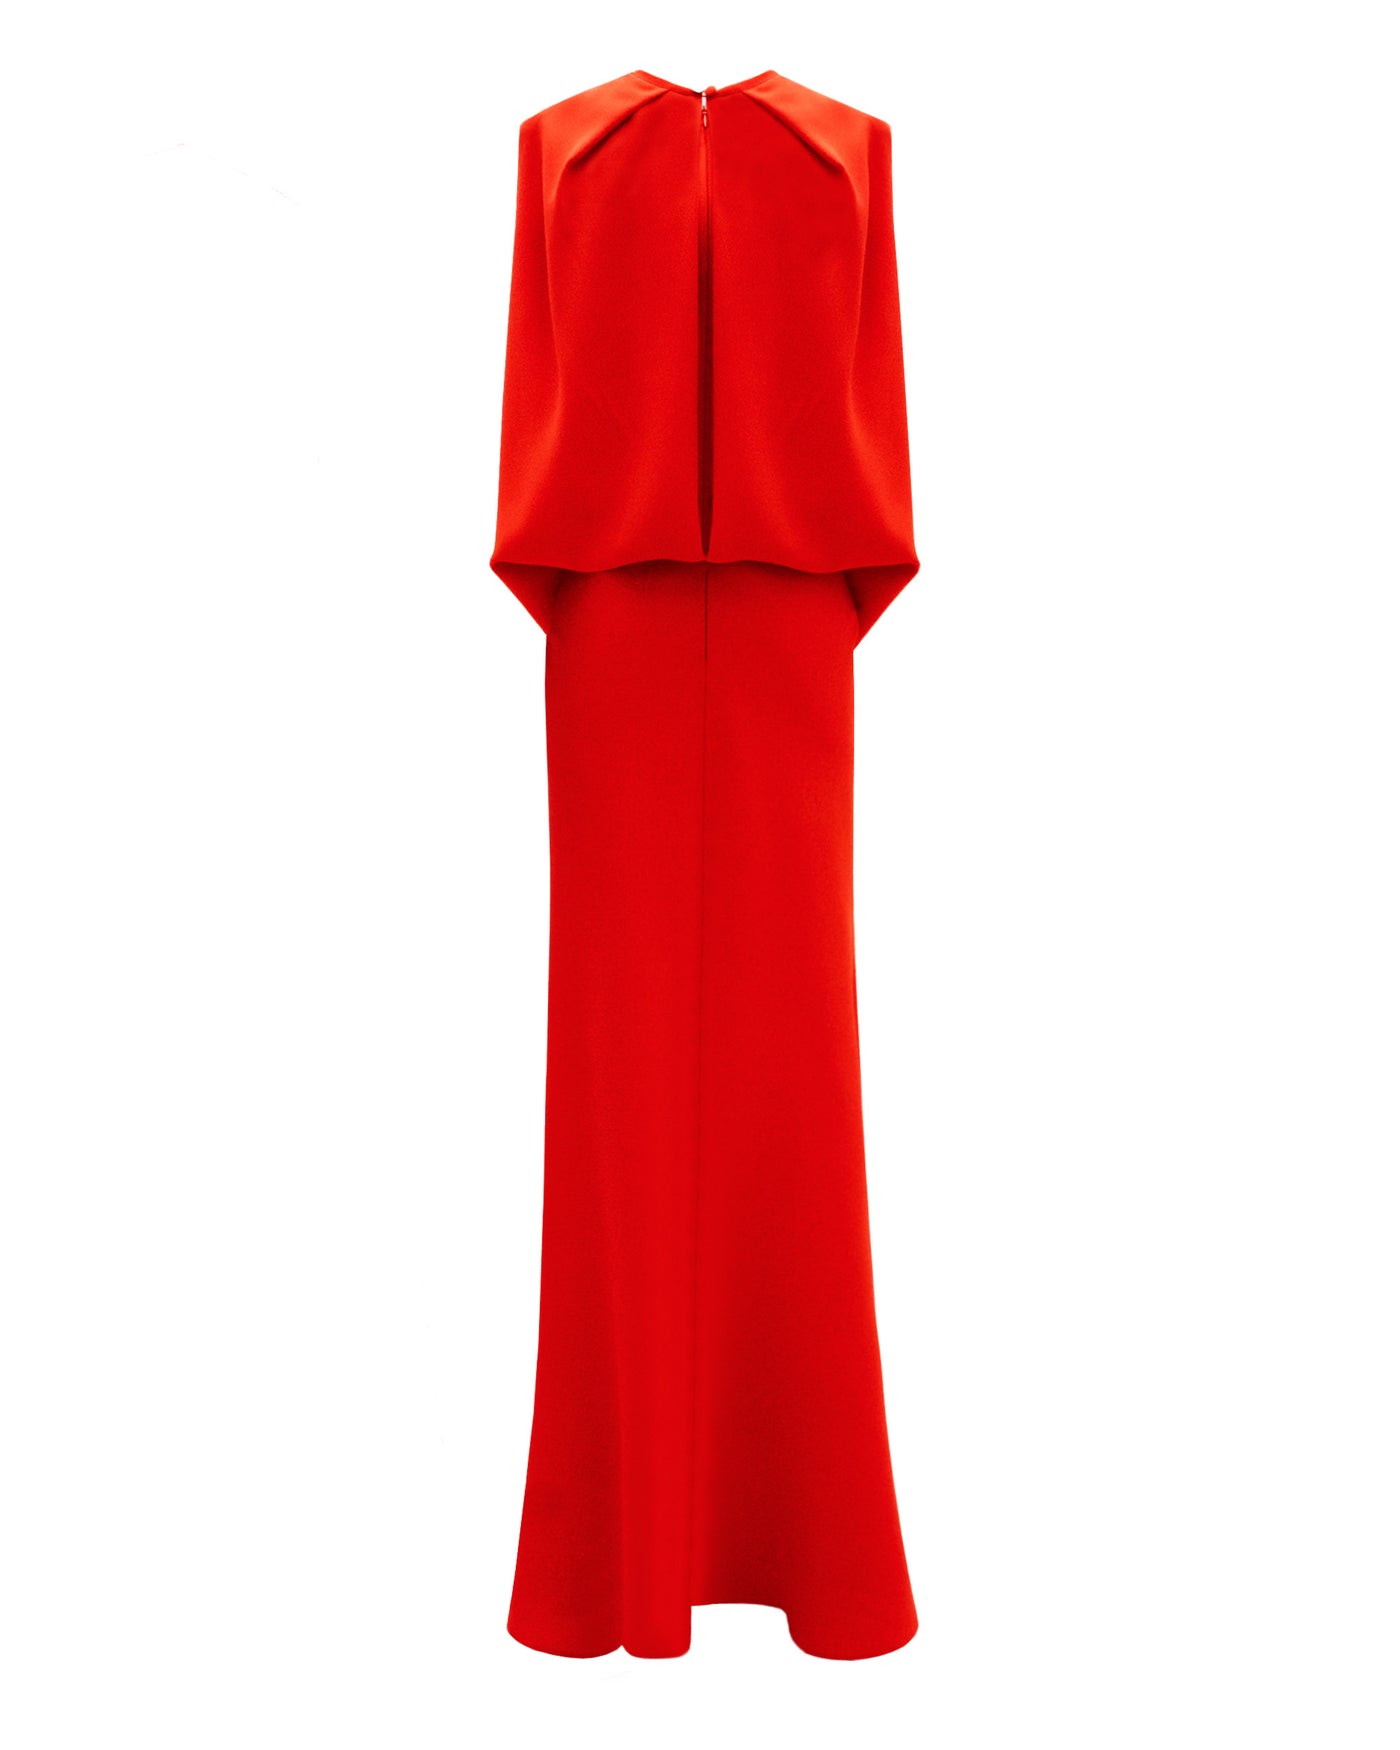 Slim Cut Red Dress